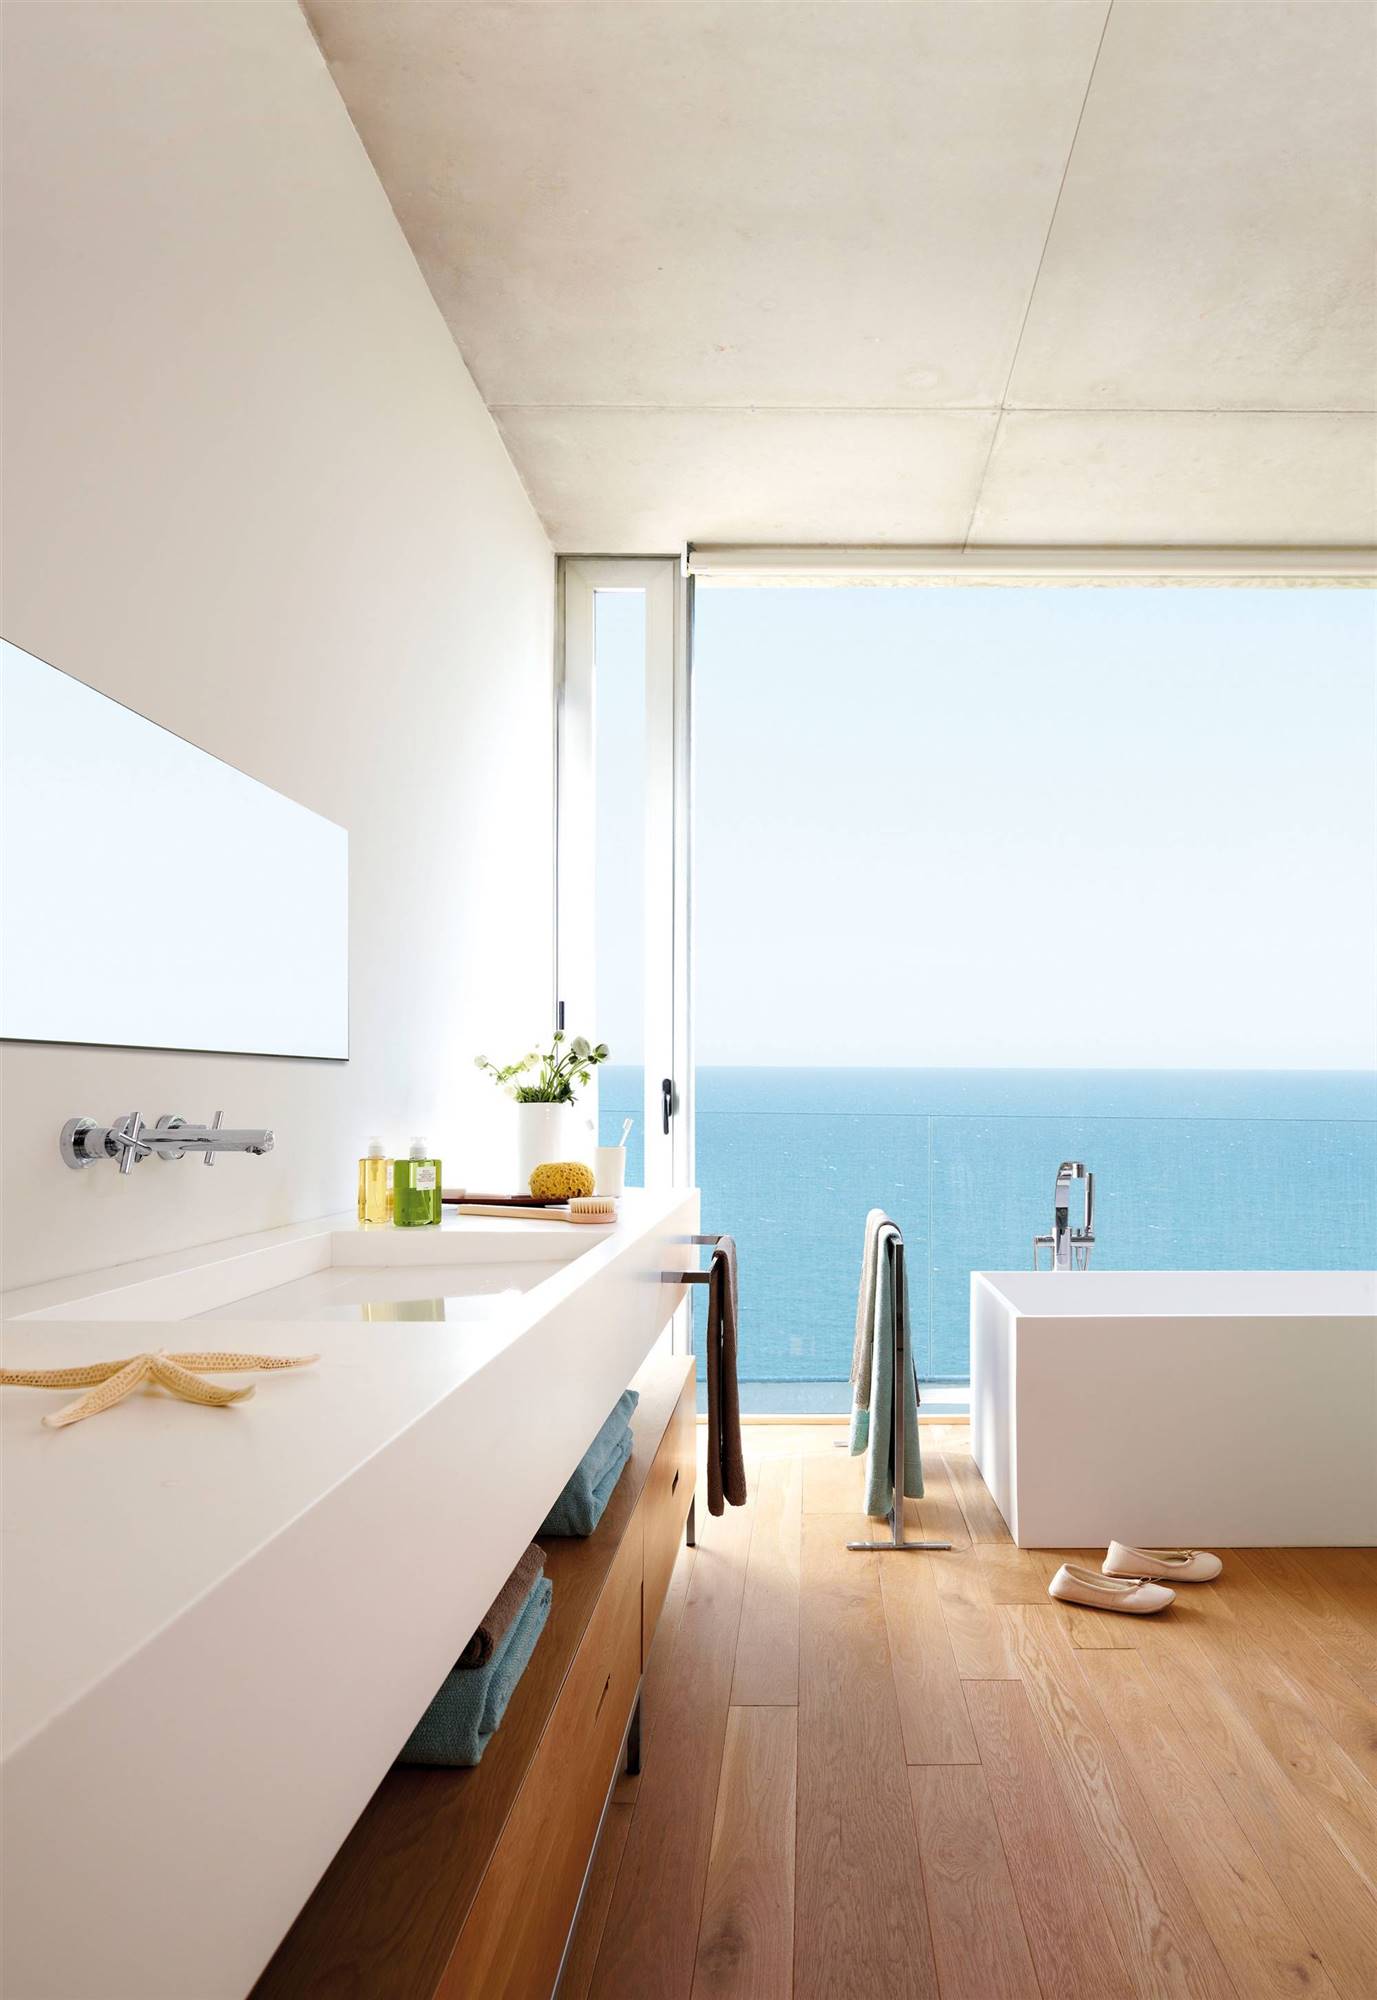 Baño moderno con vistas al mar y bañera exenta.